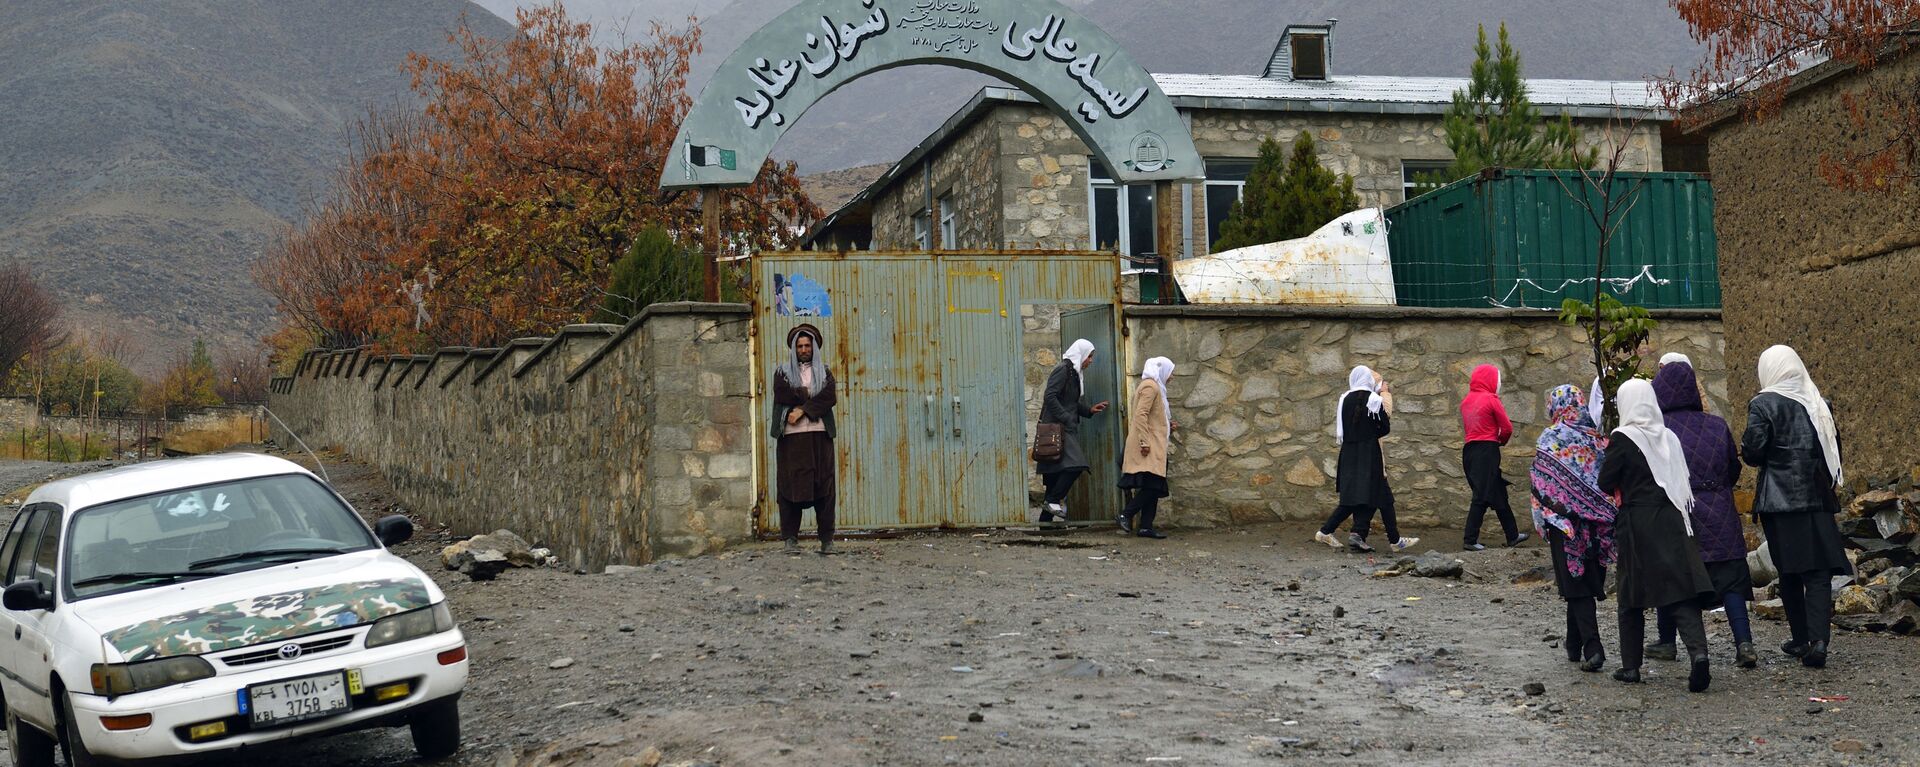 Школа для девочек в городе Базарак (Панджшерское ущелье) - Sputnik Таджикистан, 1920, 25.08.2021